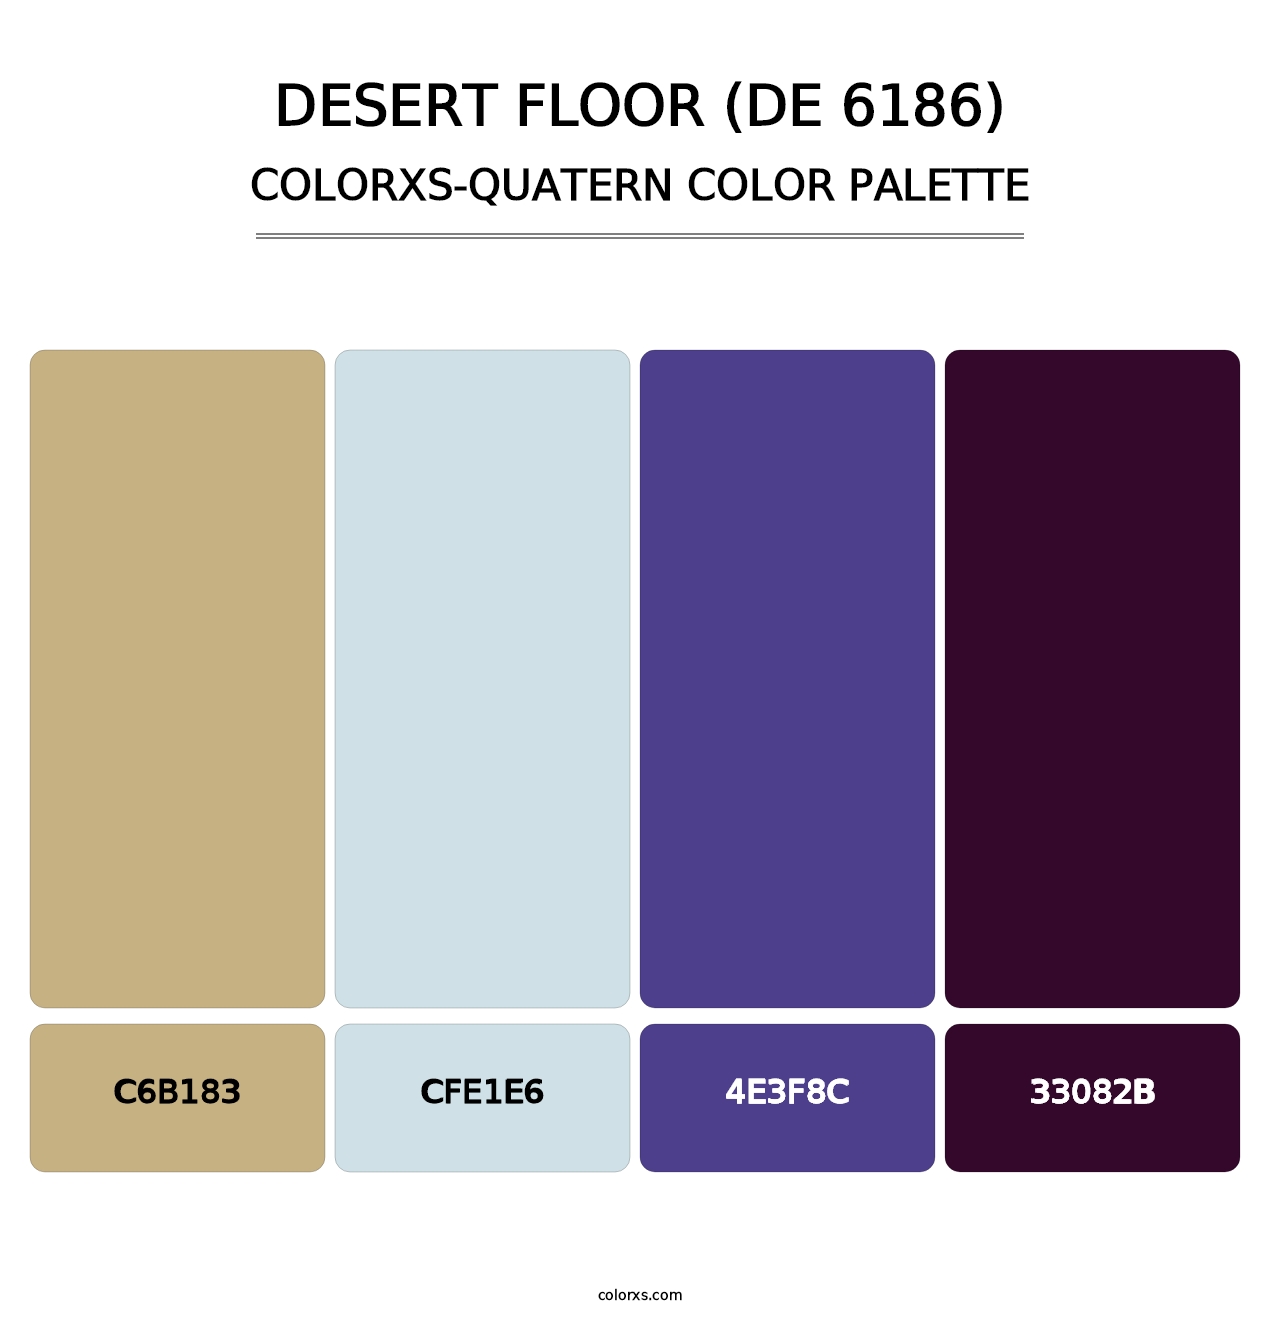 Desert Floor (DE 6186) - Colorxs Quatern Palette